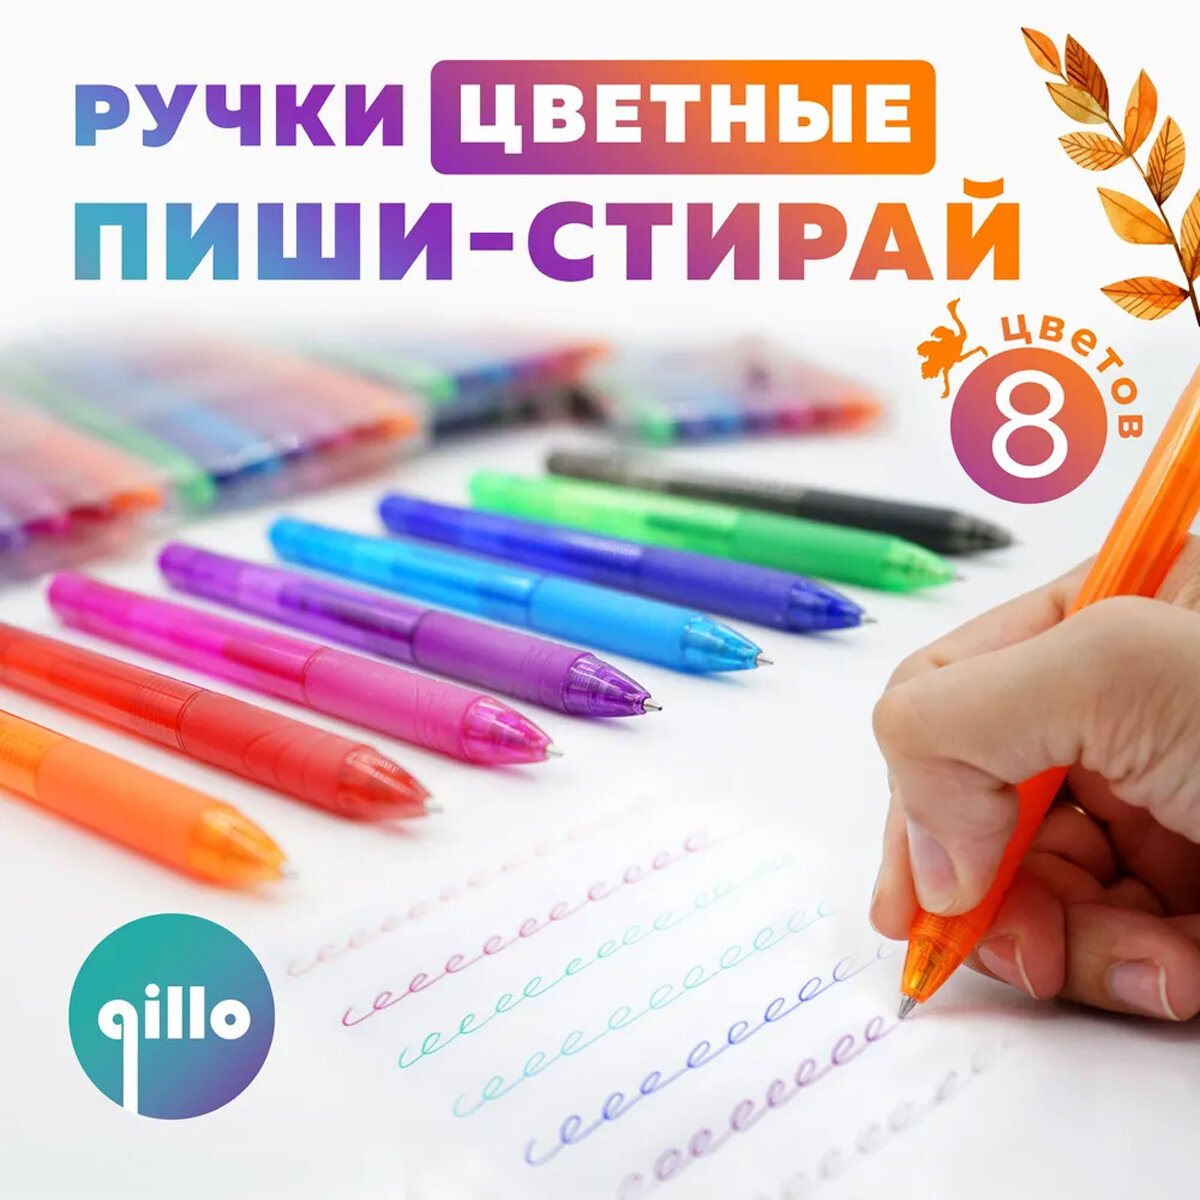 Гелевые цветные ручки пиши-стирай Qillo для рисования и письма